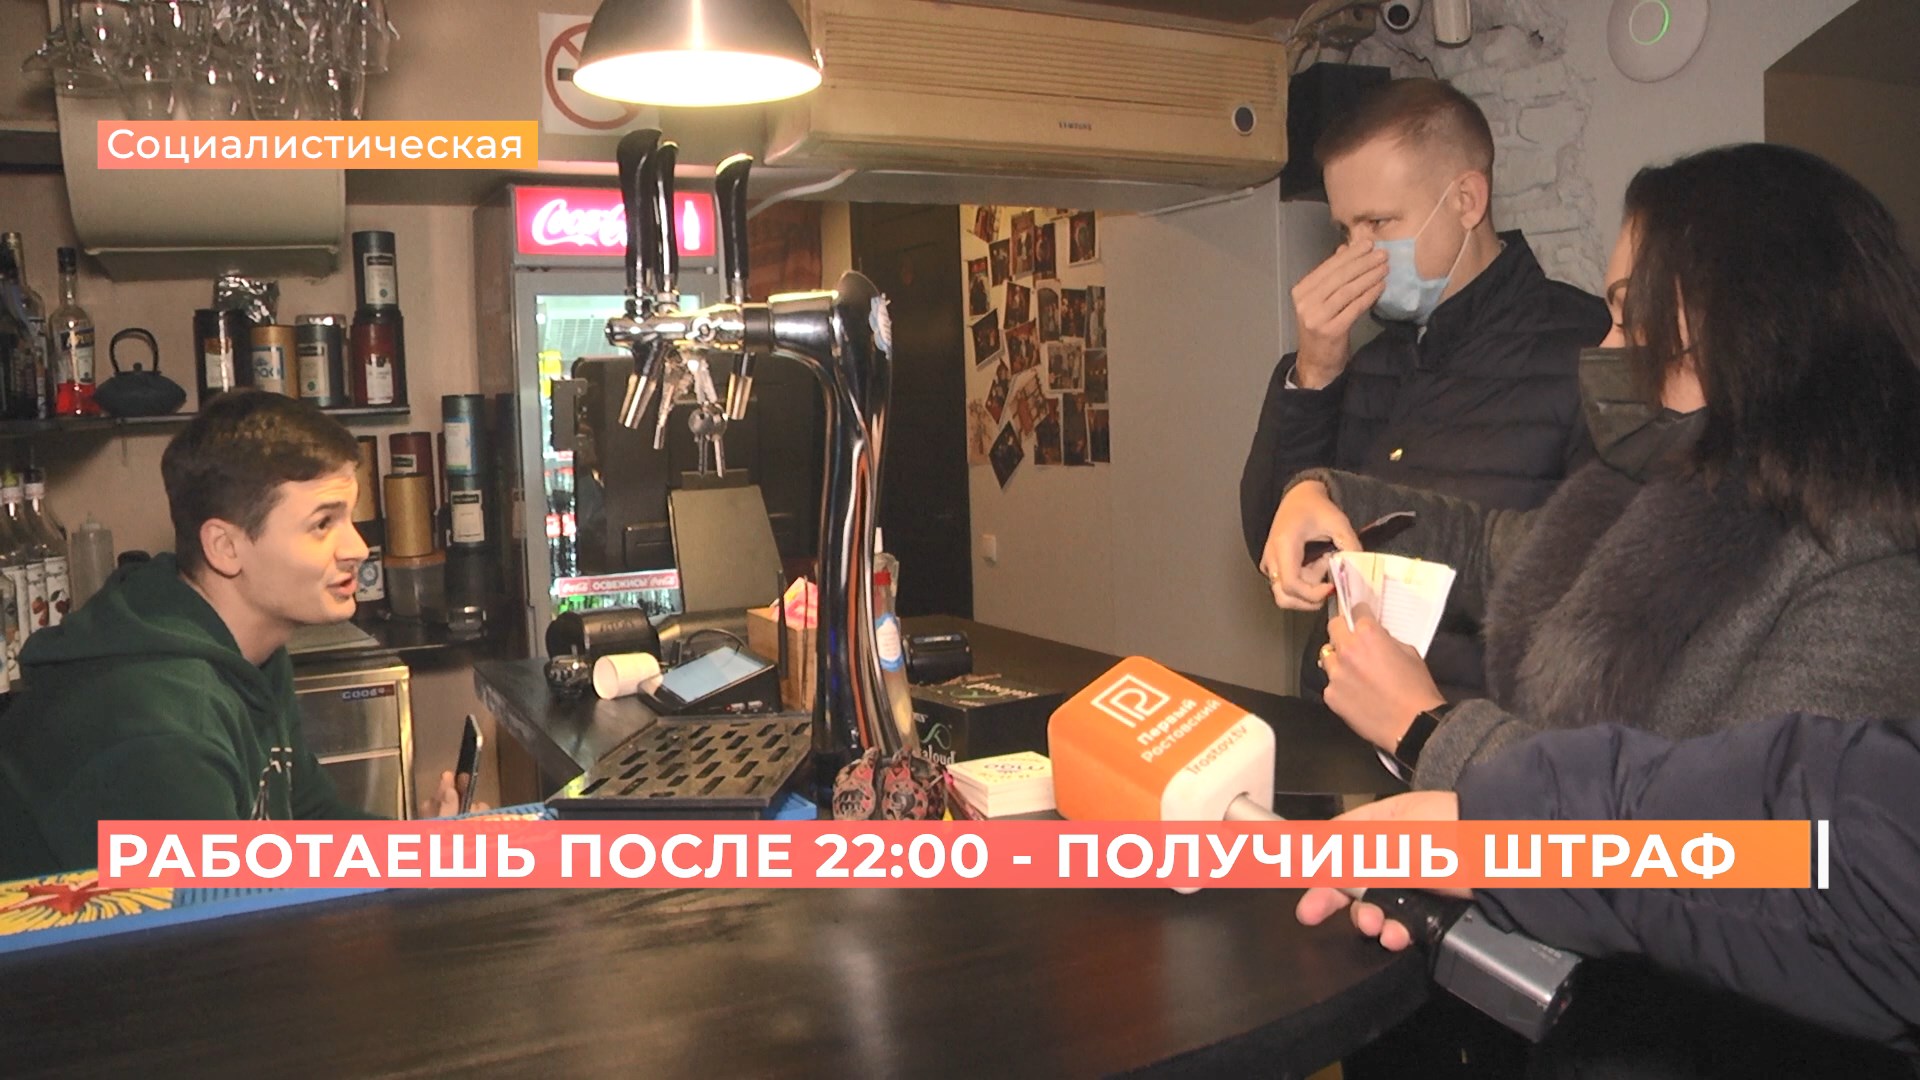 Отдохнули на 100 тысяч рублей: в Ростове оштрафовали заведения общепита за работу ночью